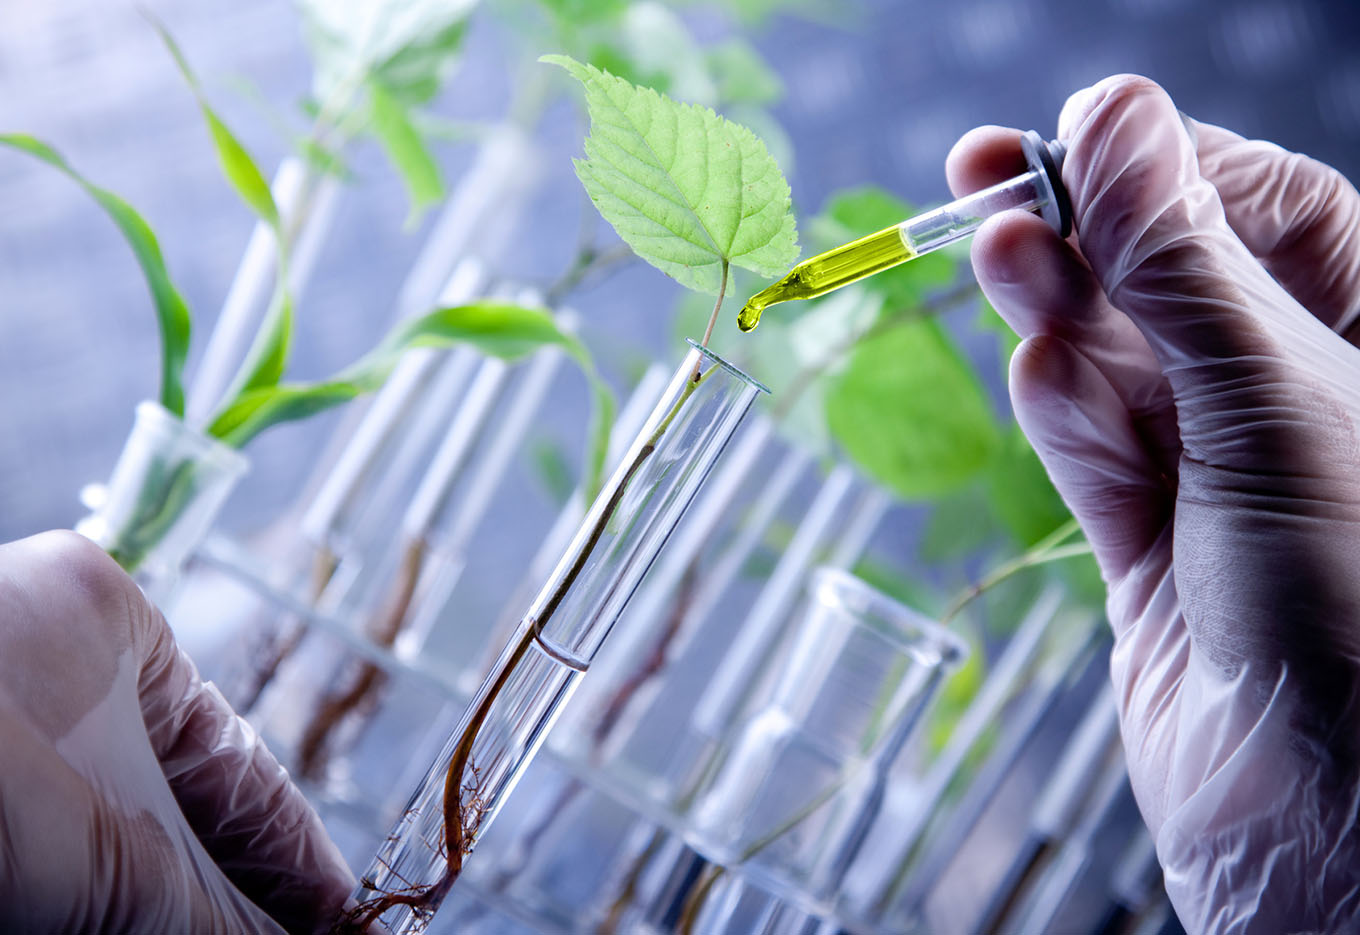 Desafios da utilização de marcadores moleculares na pureza genética e na identificação de cultivares